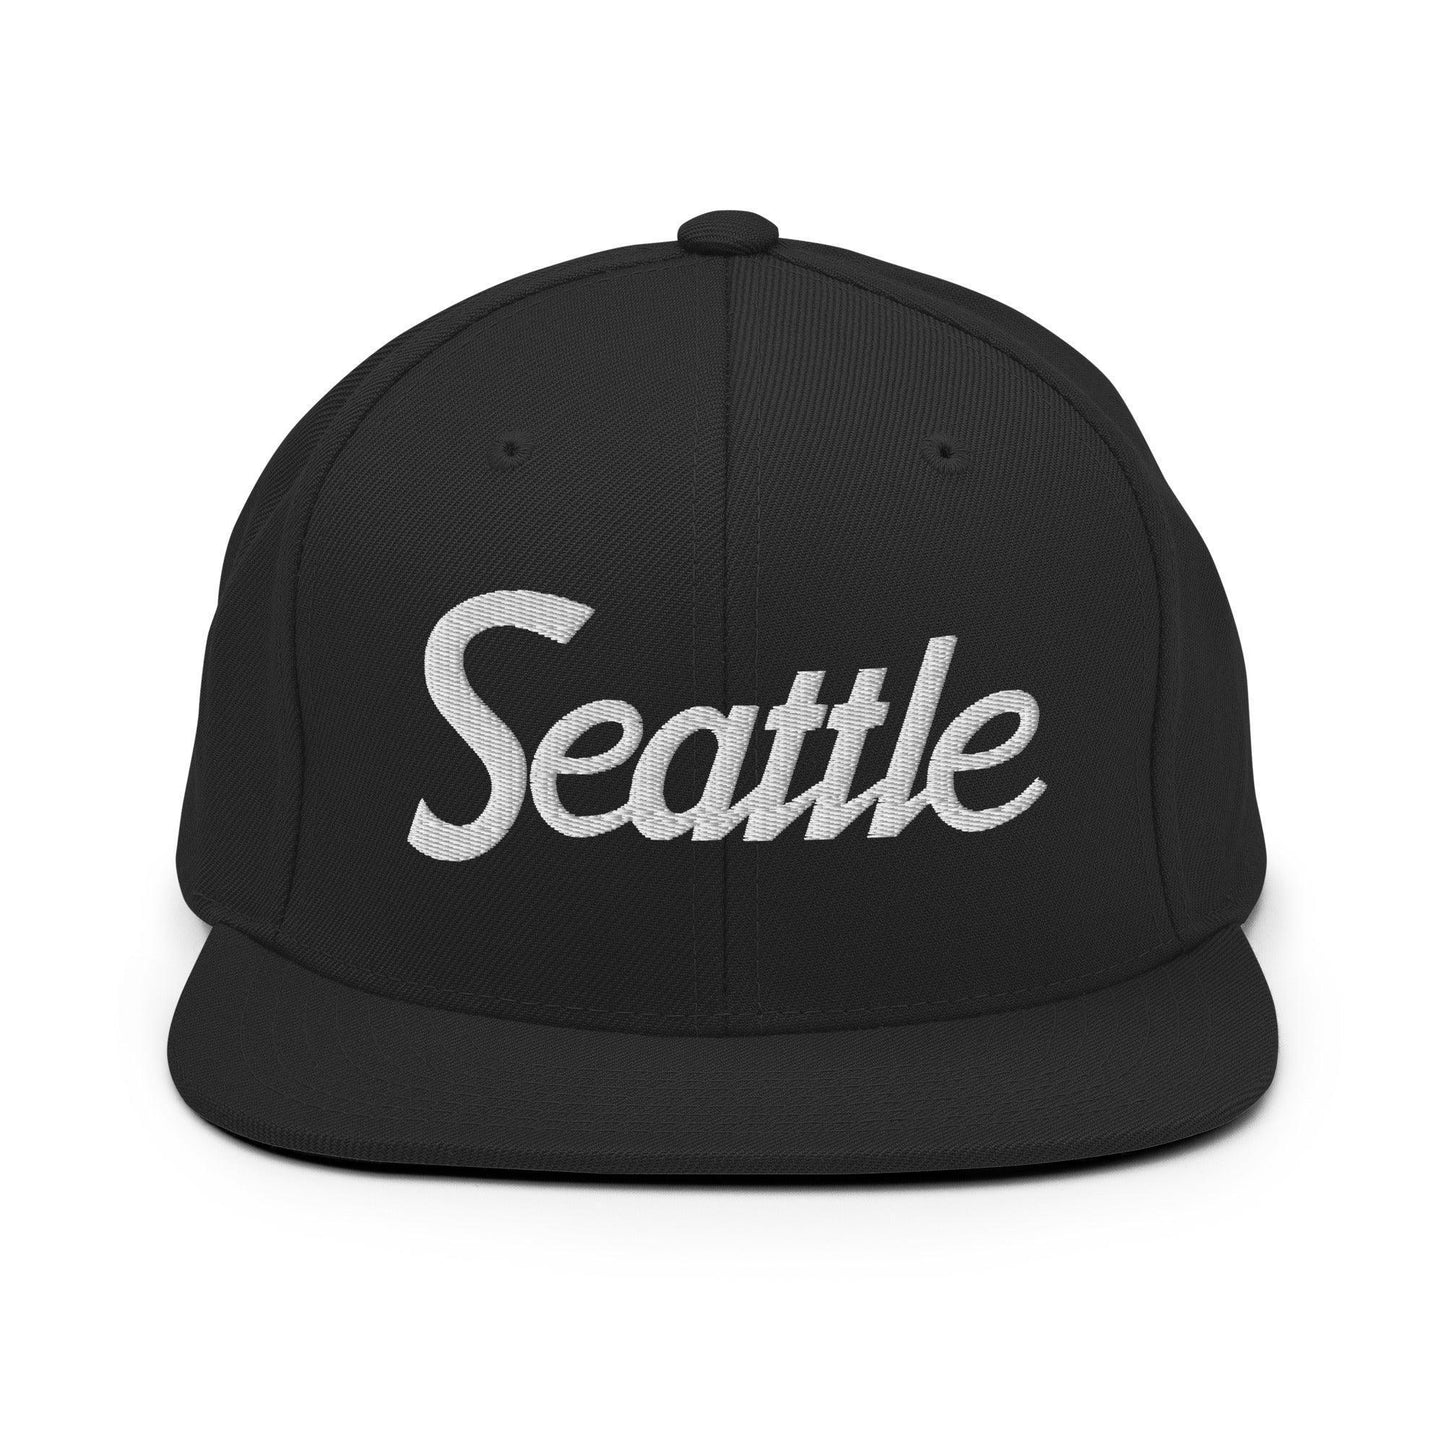 Seattle Script Snapback Hat Black